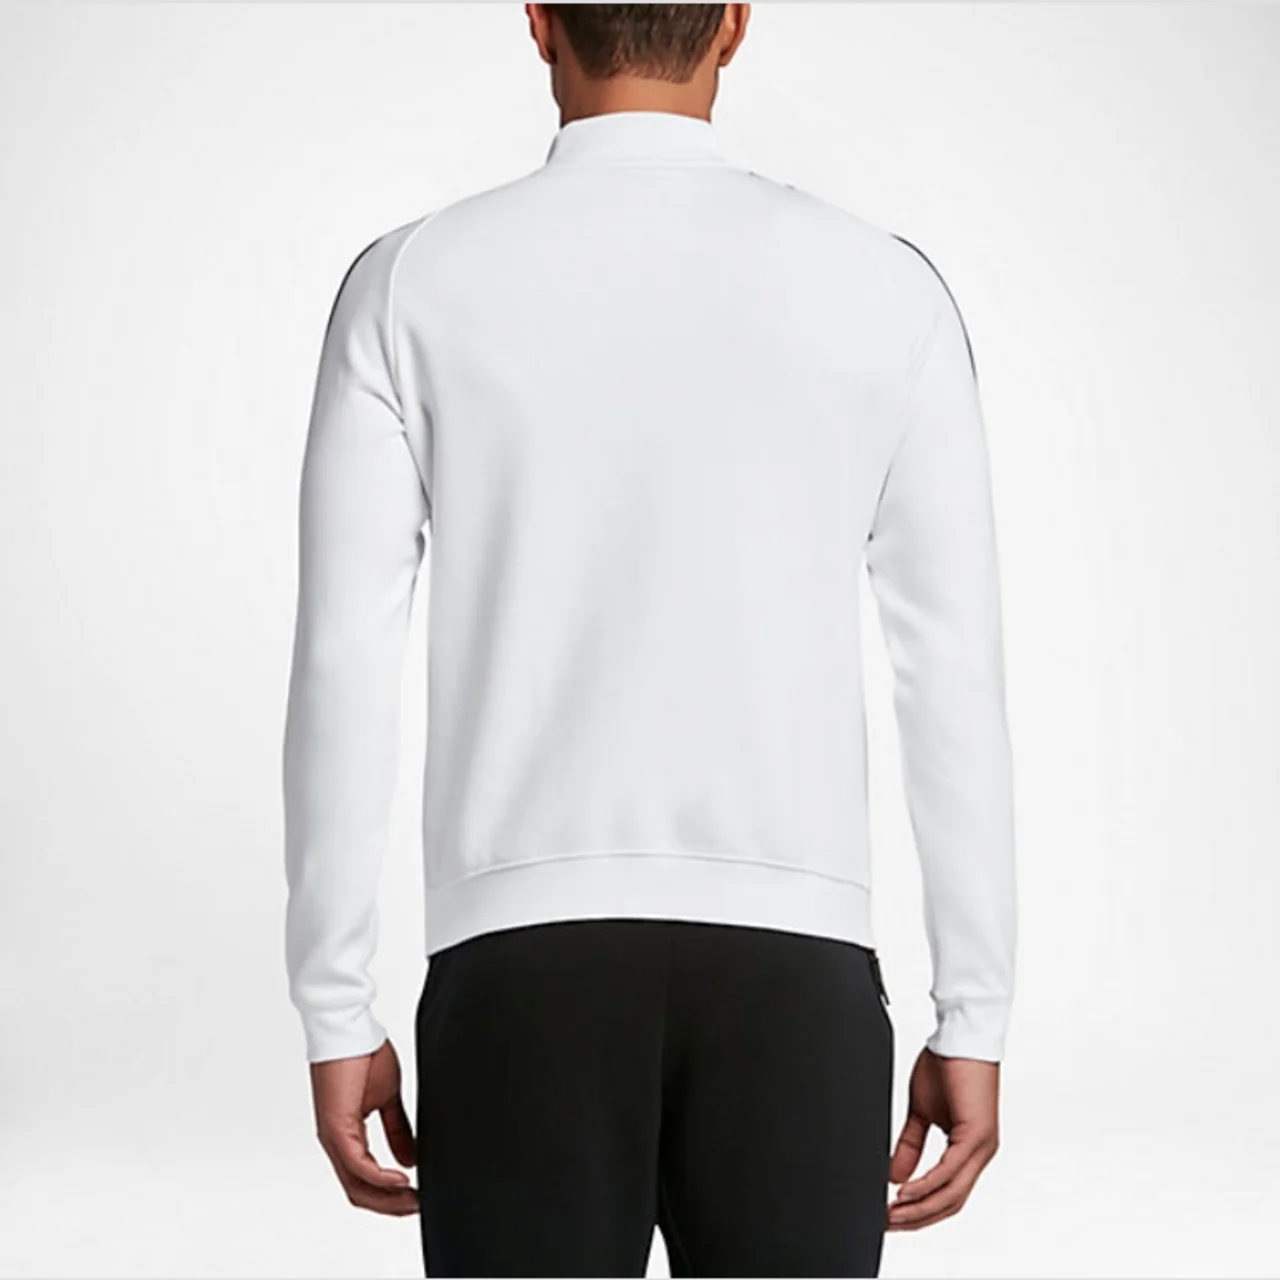 Nike Roger Federer Premier Jacket White/Black